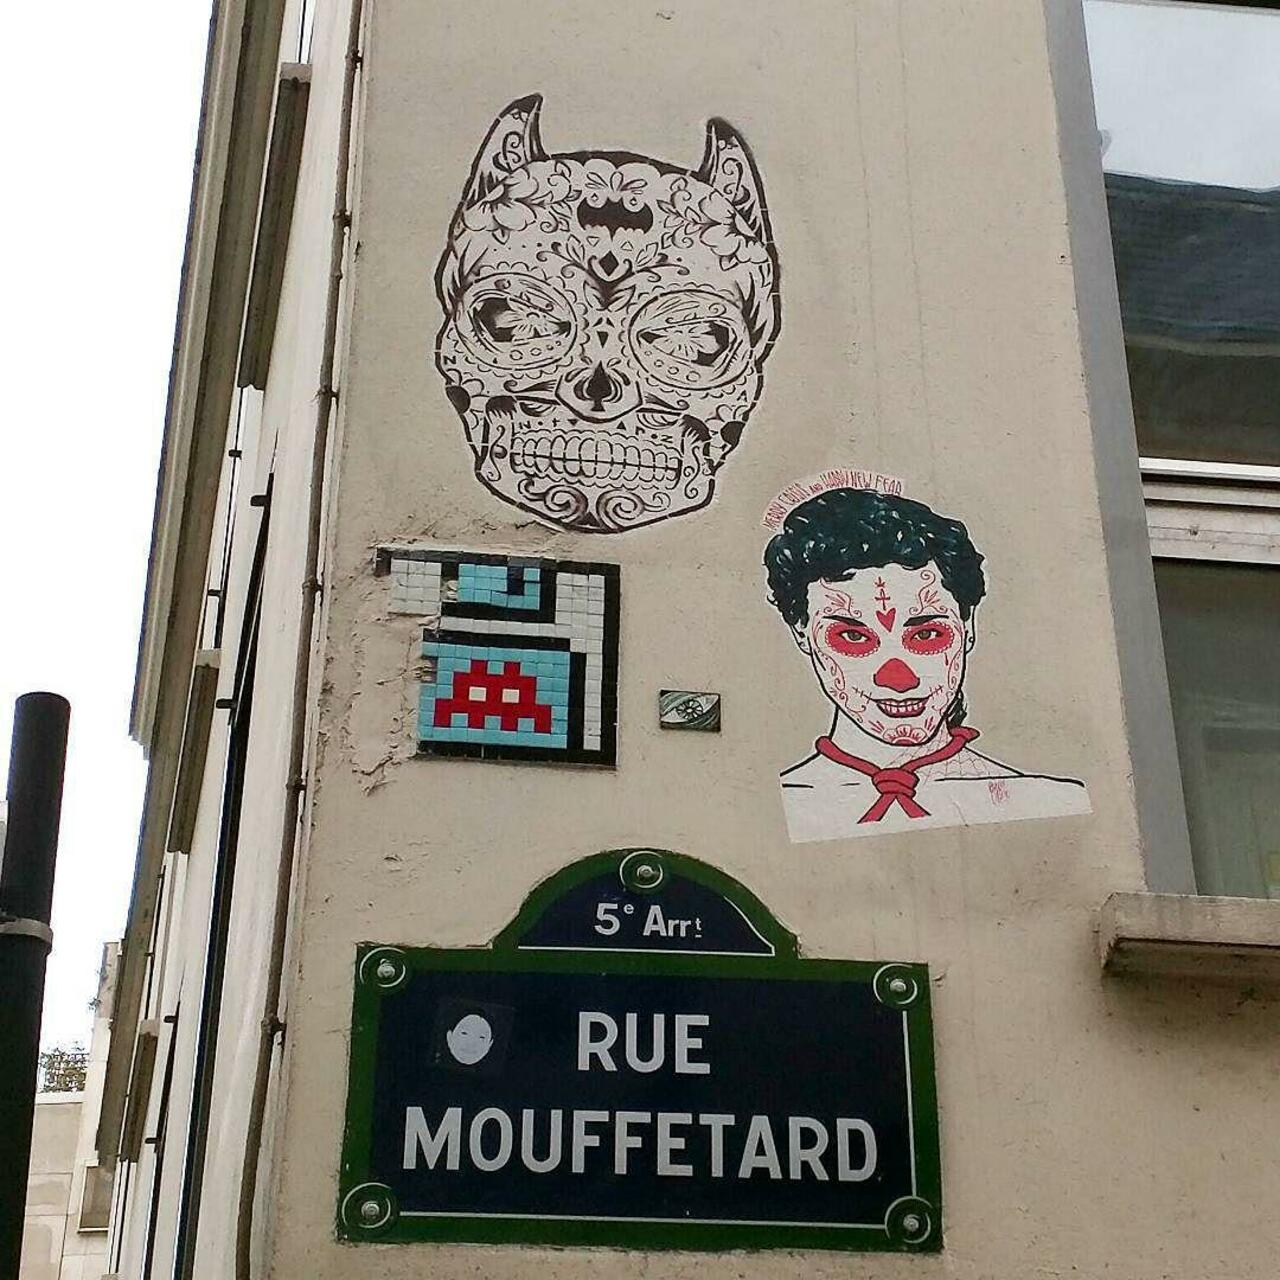 #Paris #graffiti photo by @alphaquadra http://ift.tt/1jn3j2k #StreetArt http://t.co/FujJ5GCJTh